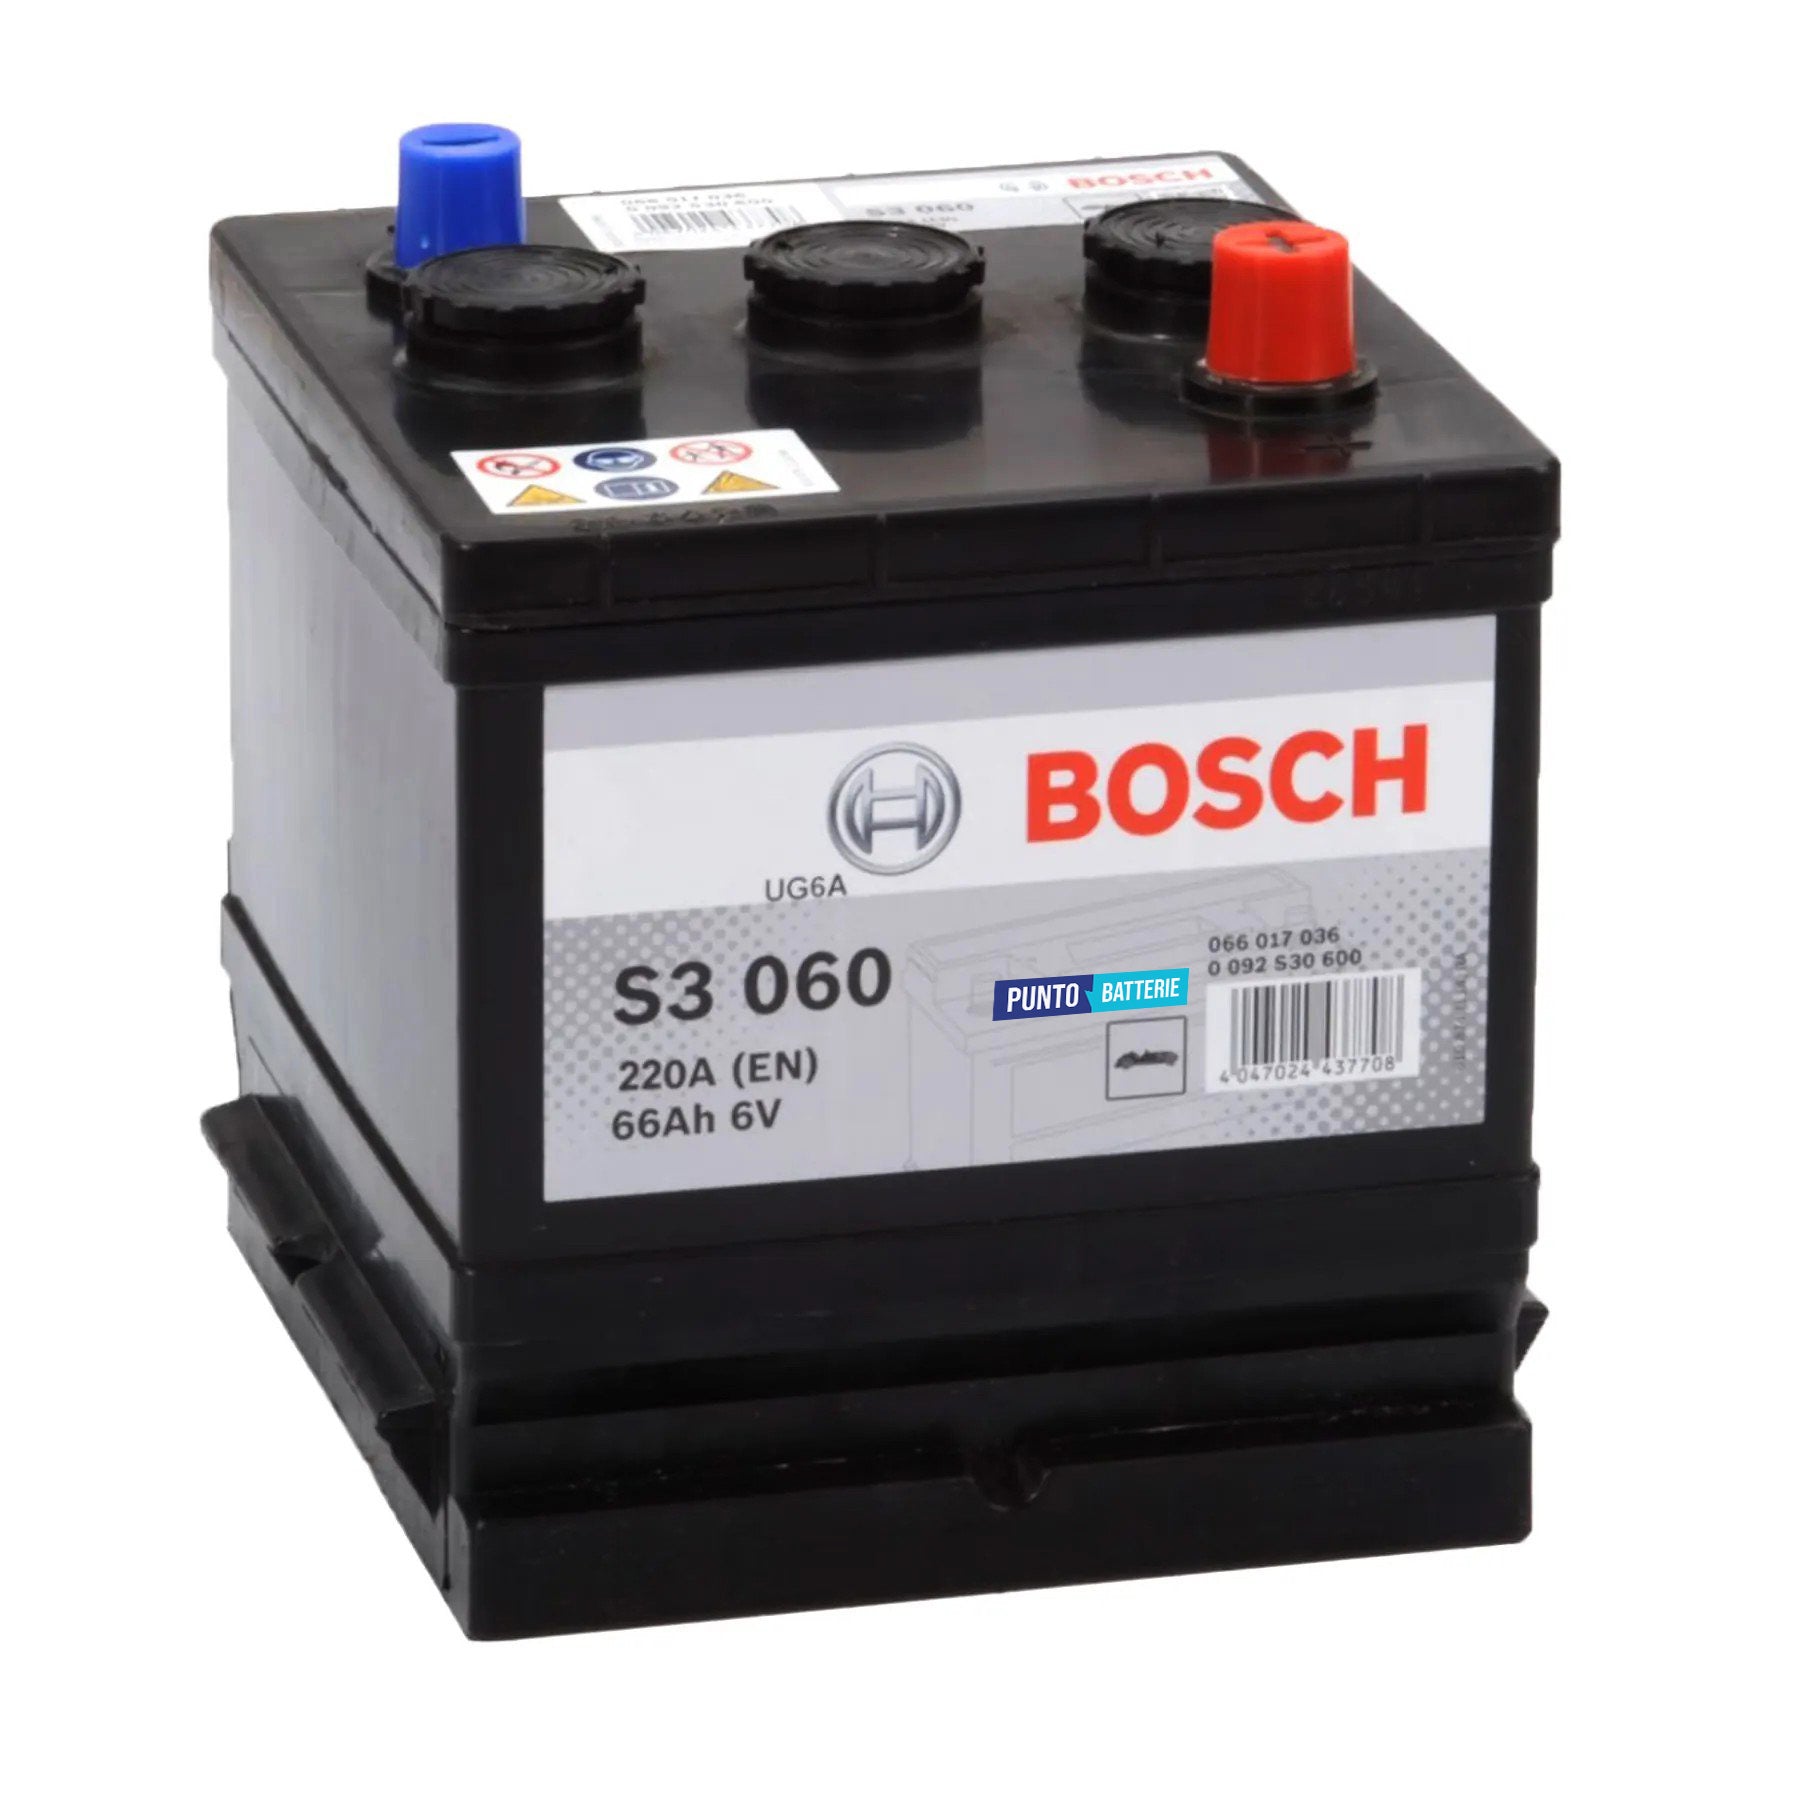 Batteria originale Bosch S3 S3 060, dimensioni 178 x 175 x 188, polo positivo a destra, 6 volt, 66 amperora, 360 ampere. Batteria per auto e veicoli leggeri.